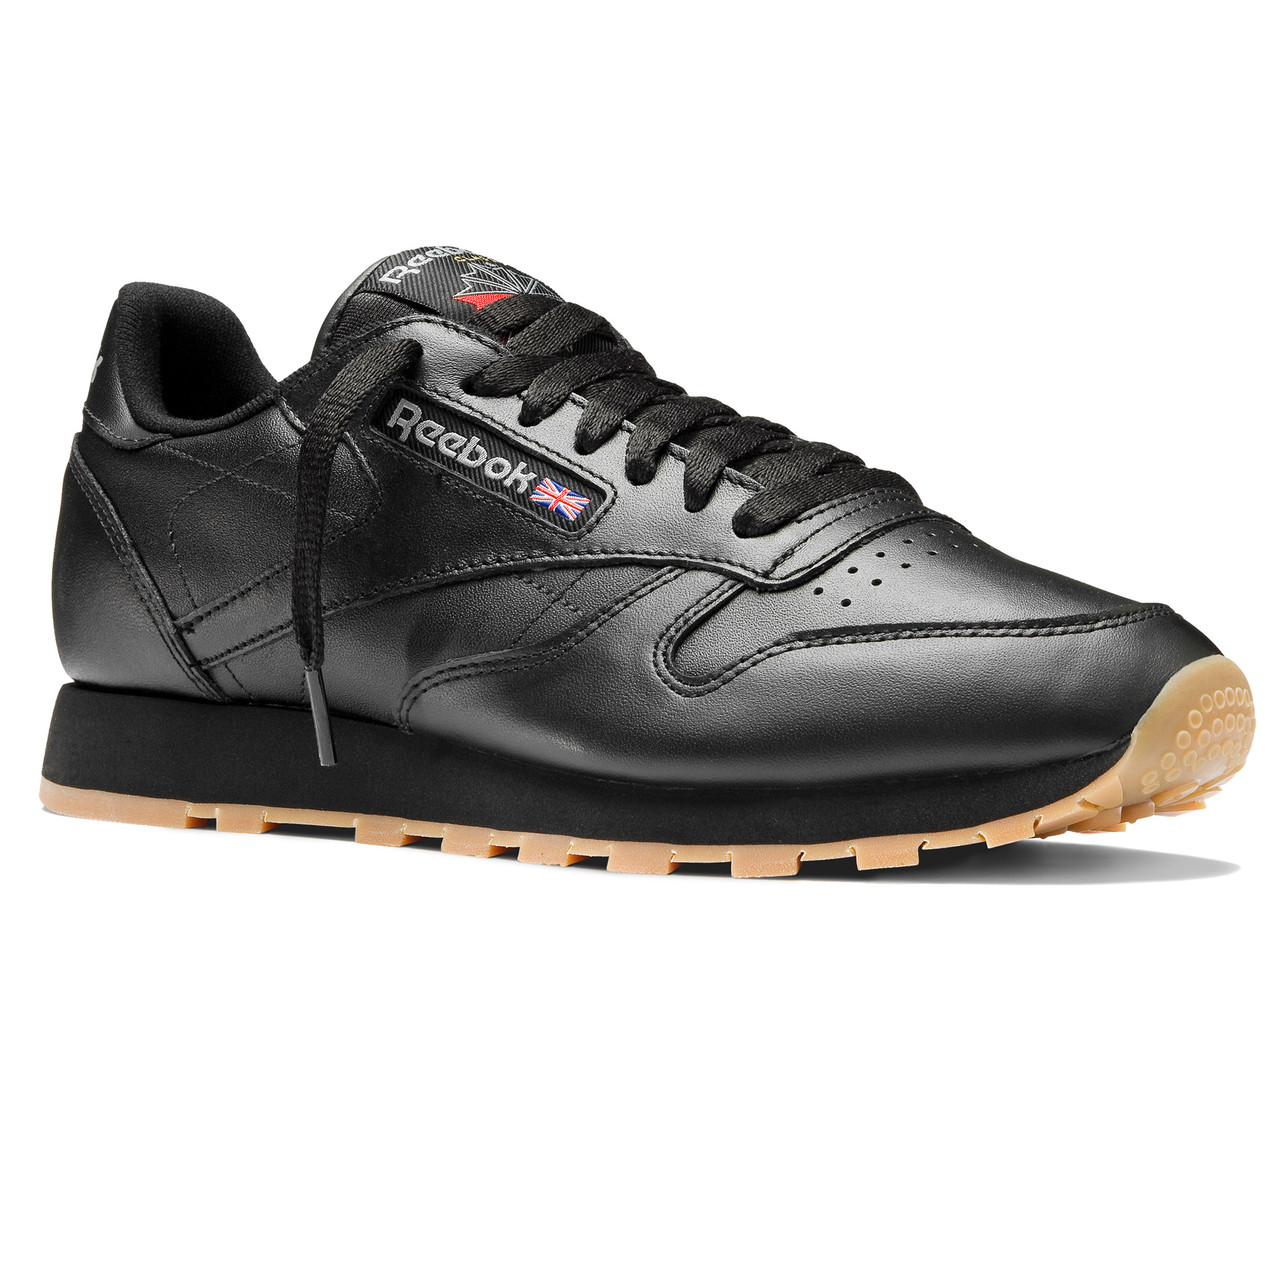 Чоловічі шкіряні кросівки оригінал модні зручні для тренувань Reebok Classic Leather чорні